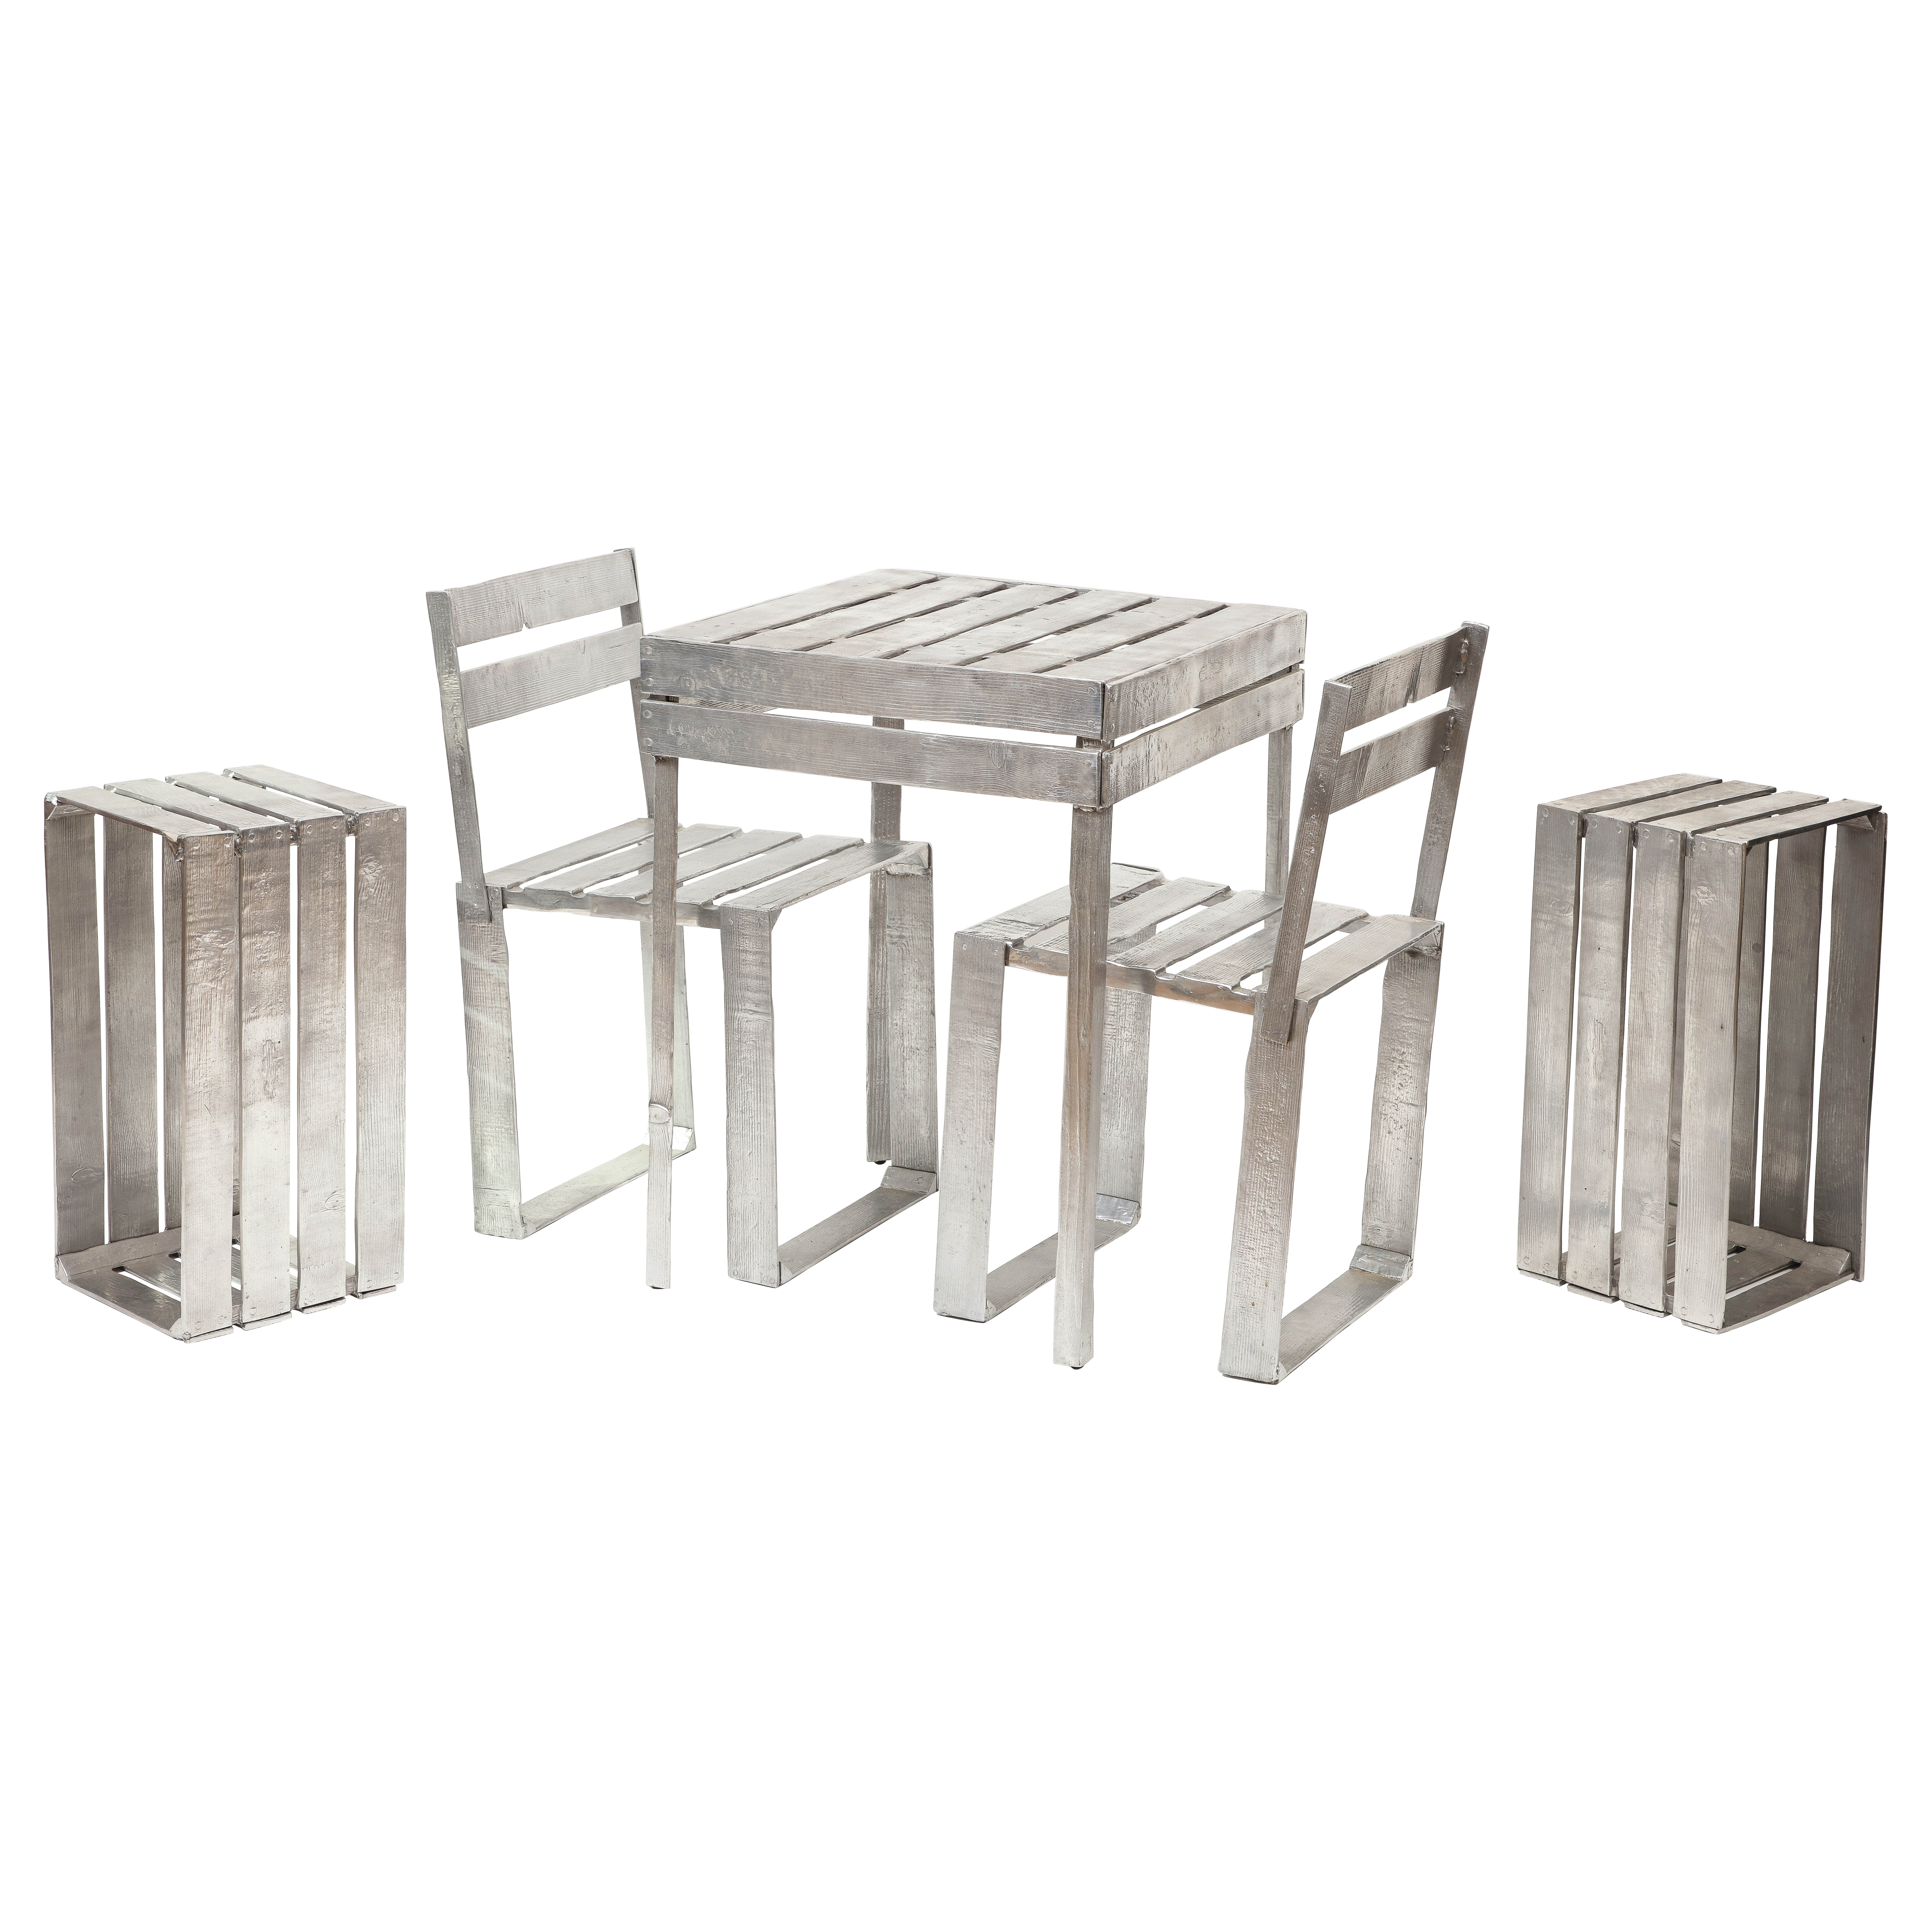 Andrea Salvetti Silver Cast Aluminum Chair and Table Set, "Sedia Ortofrutta" For Sale